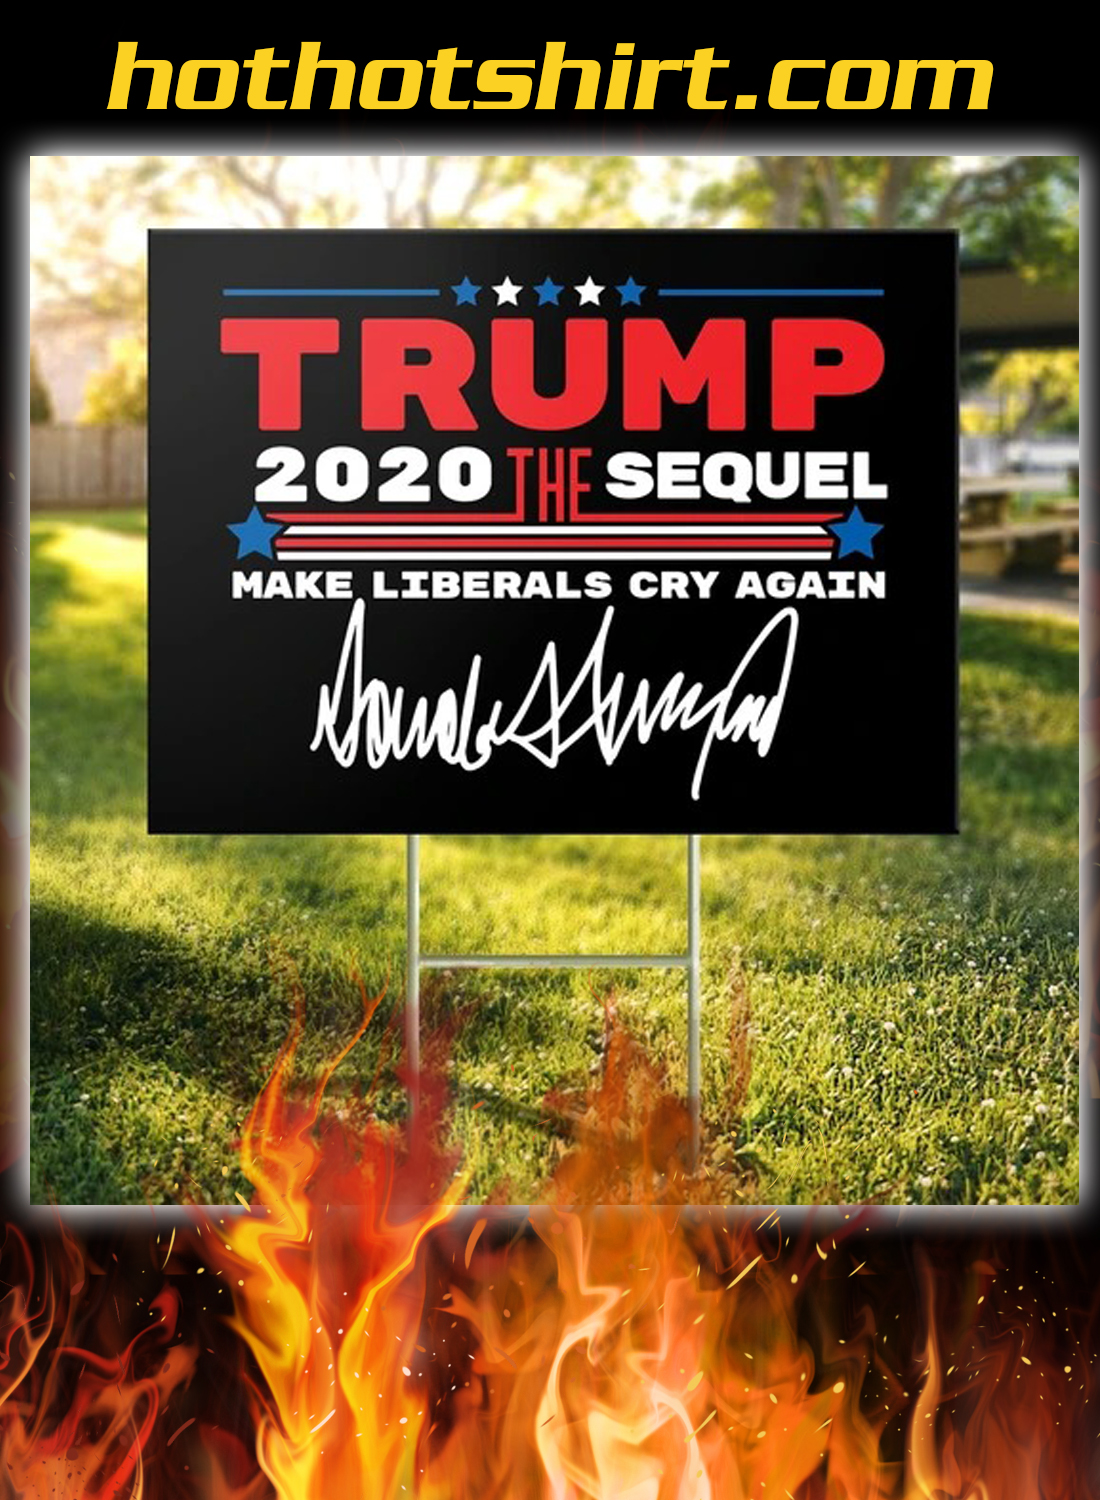 Trump the sequel signature yard sign